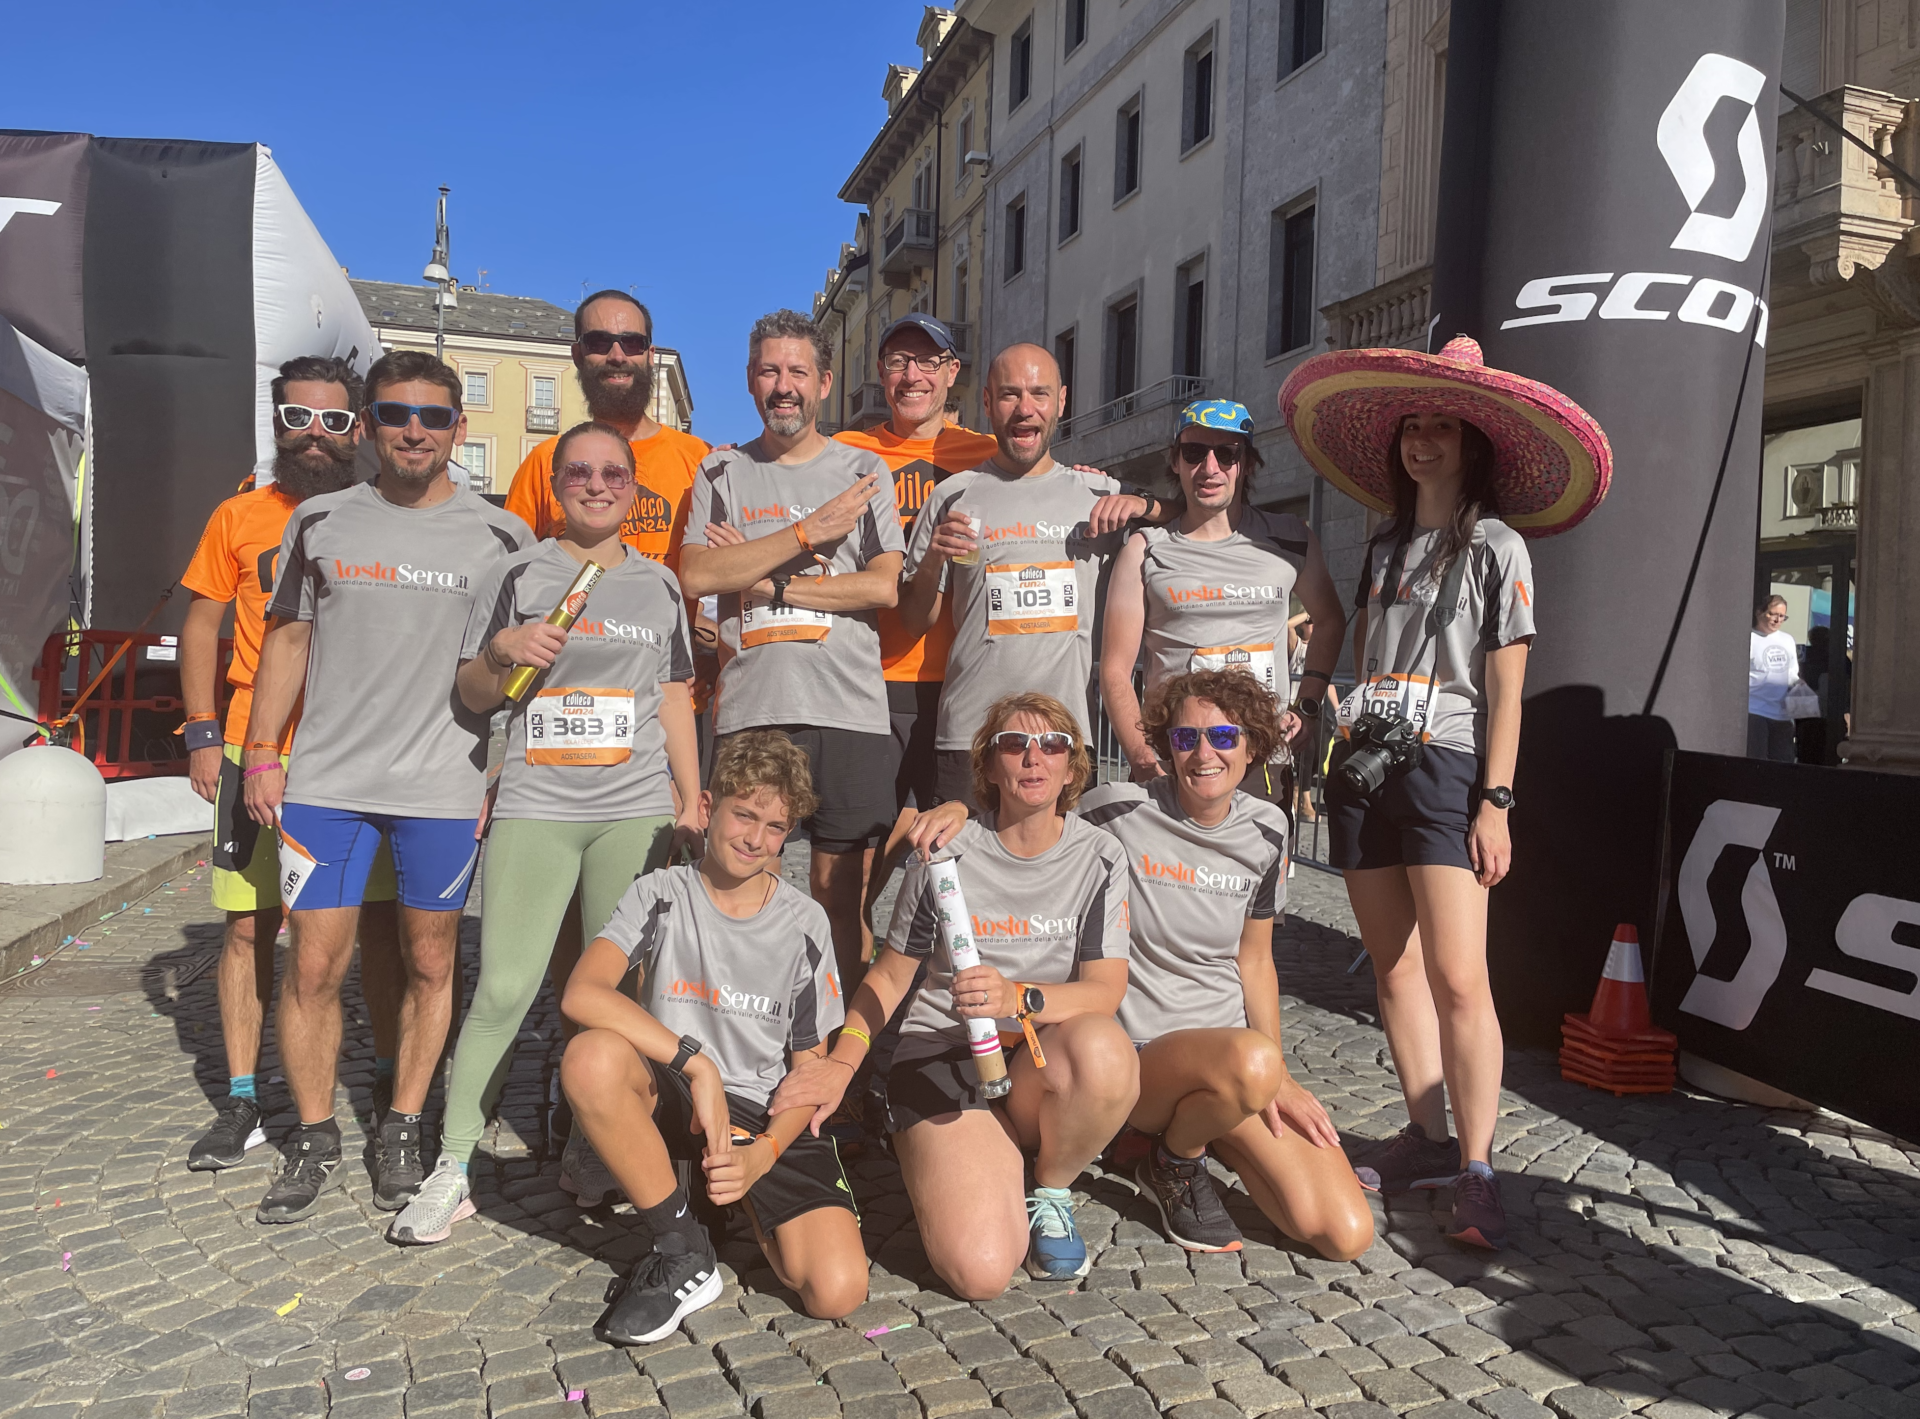 Team Aostasera Edilecorun